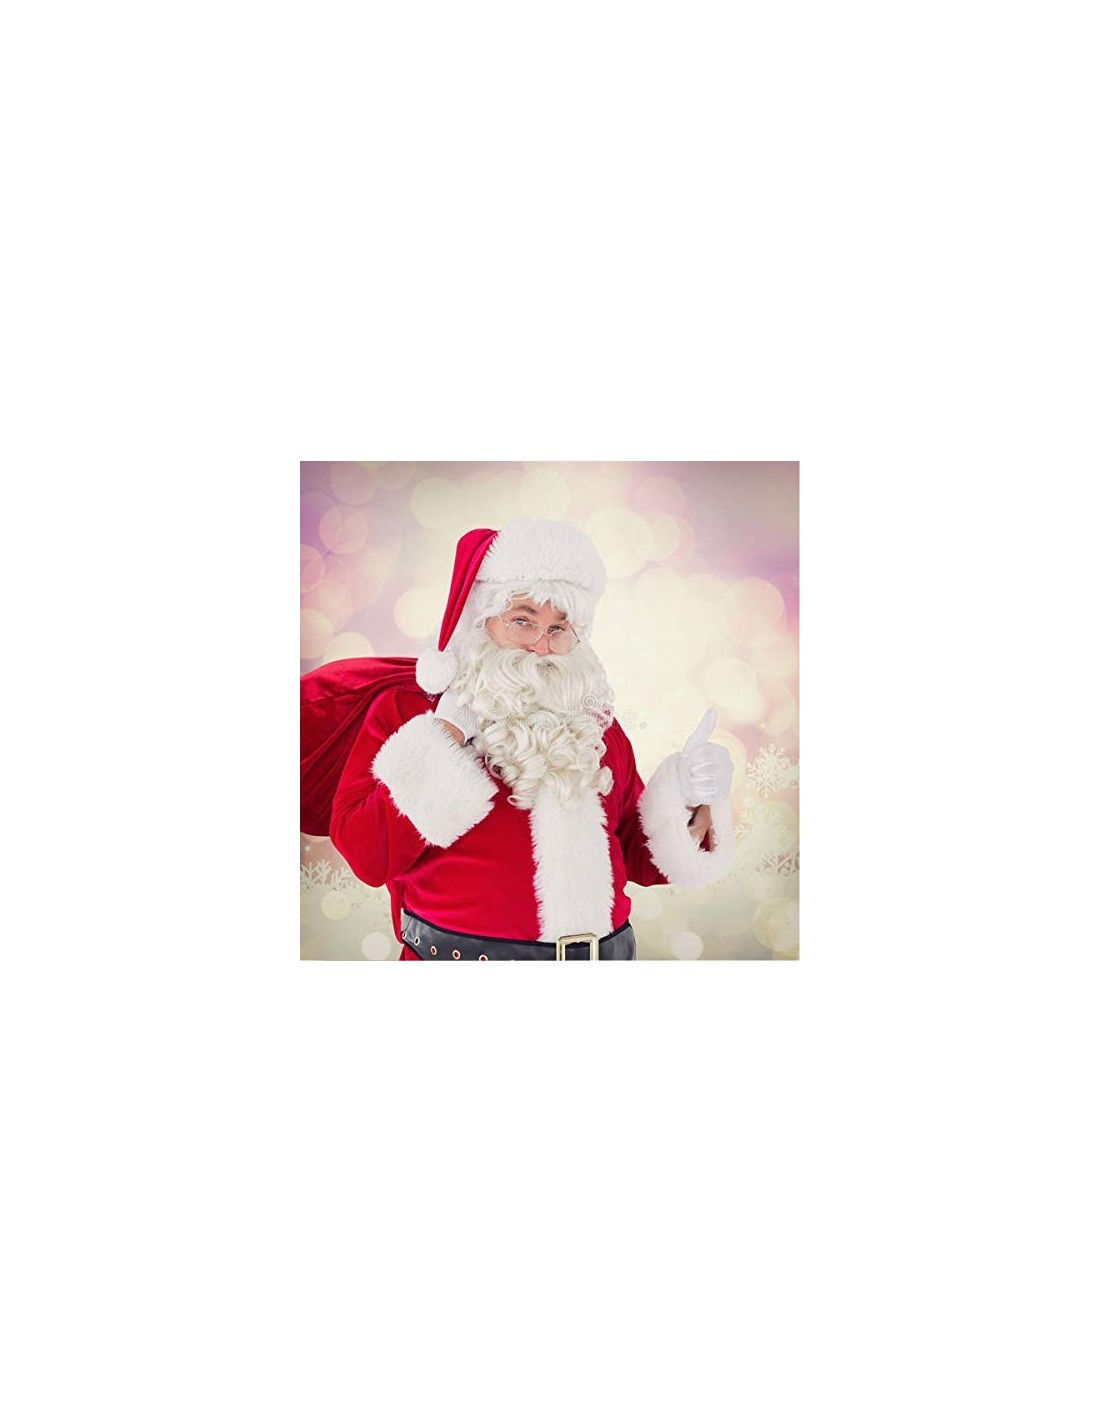 1 Bolsa Extragrande de Santa Claus Decoraciones y Accesorios de Navidad Tradicionales en Rojo y Blanco Jonami Saco de Papa Noel 